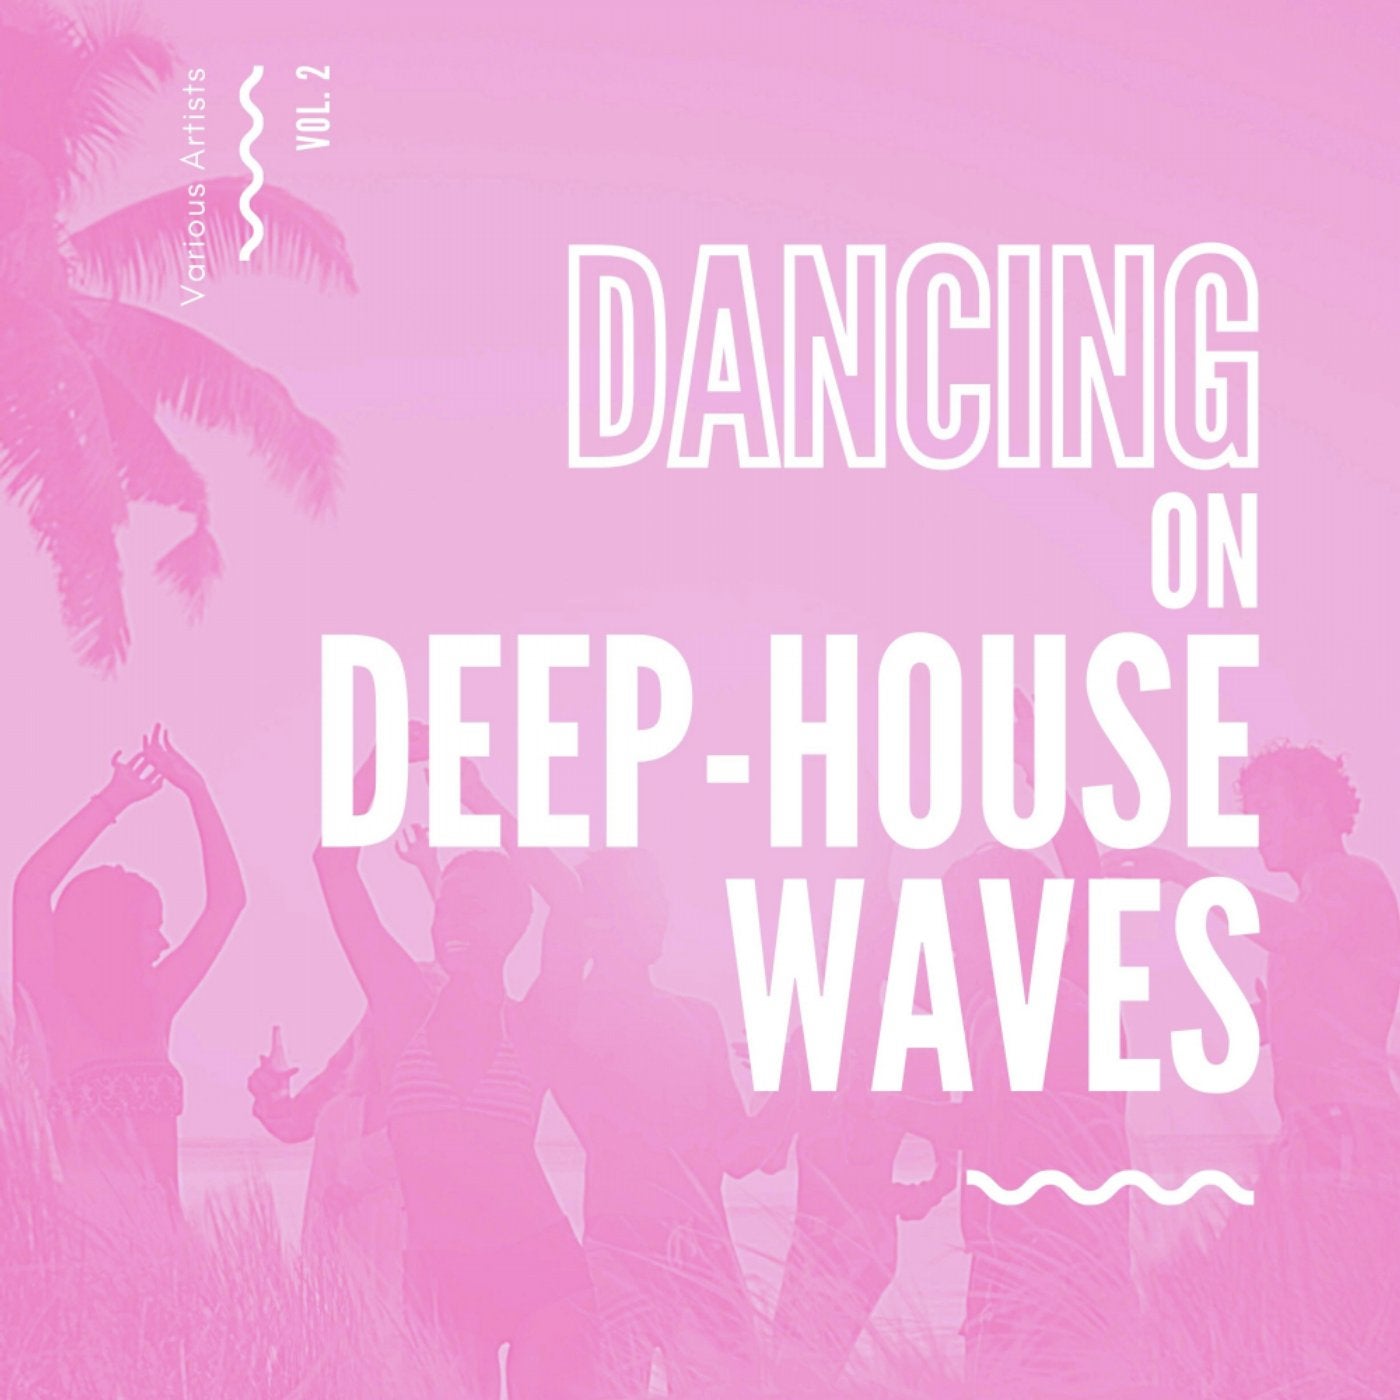 Dancing On Deep-House Waves, Vol. 2